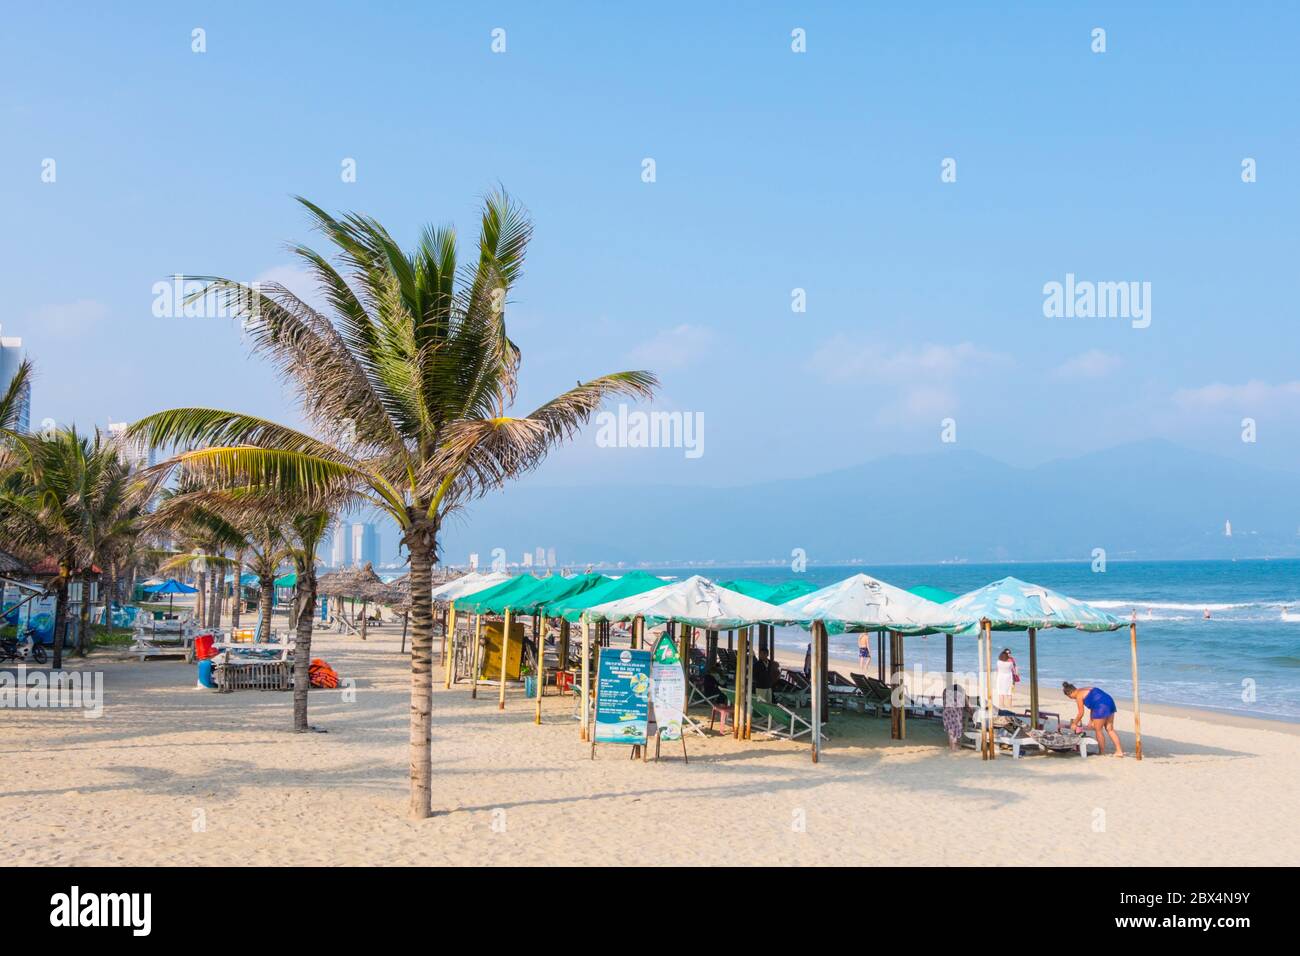 My Khe beach, Danang, Vietnam Stock Photo